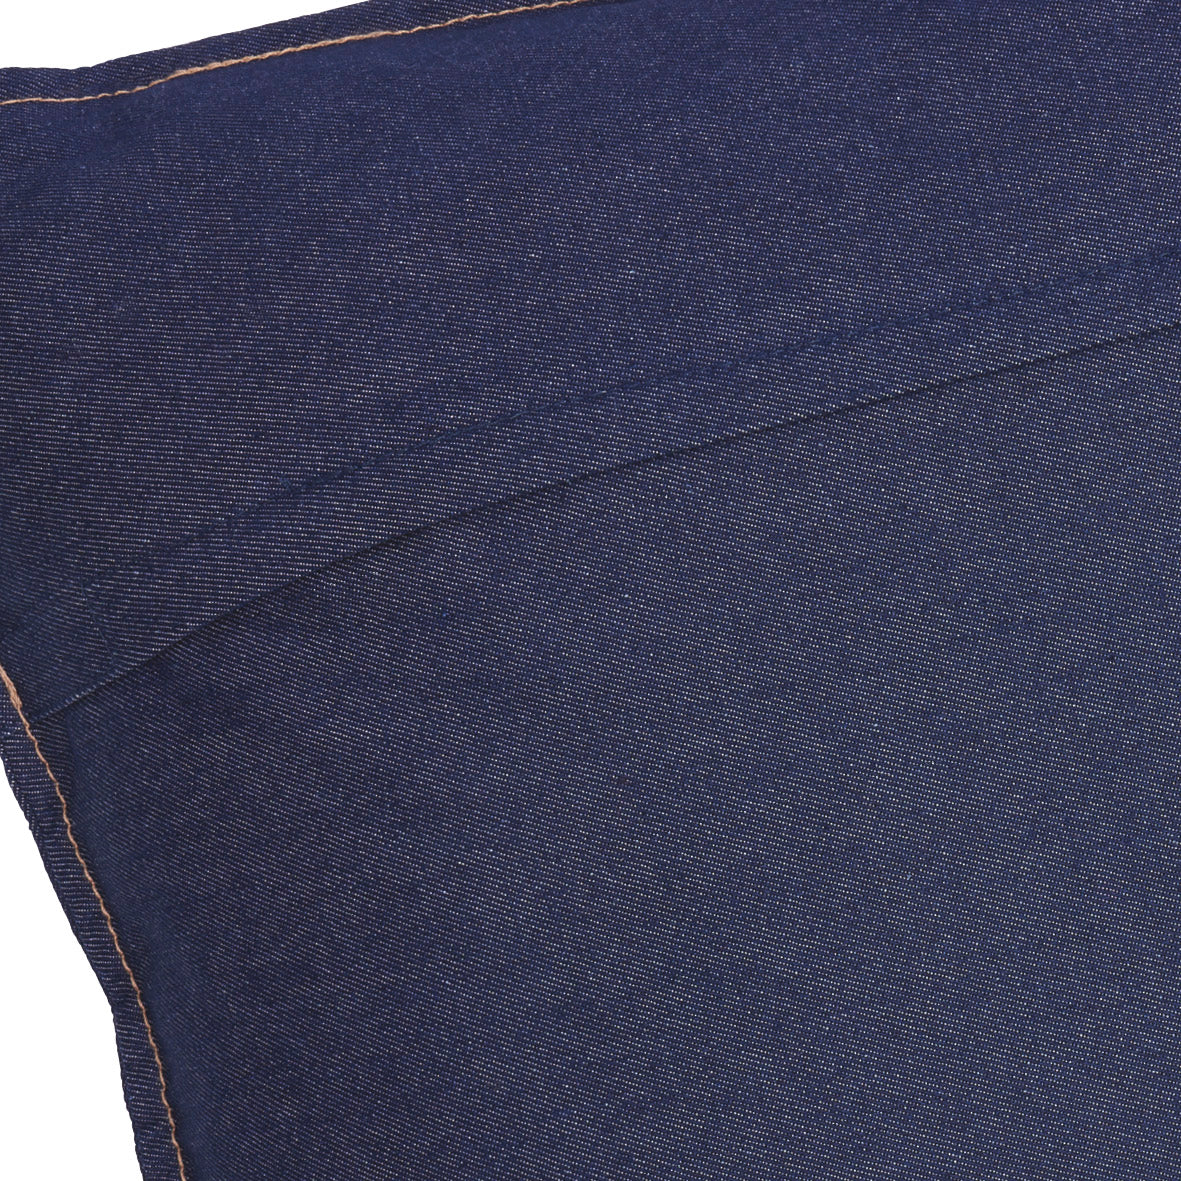 Coussin en coton ultra doux et confortable - Bleu jeans foncé - VipShopBoutic